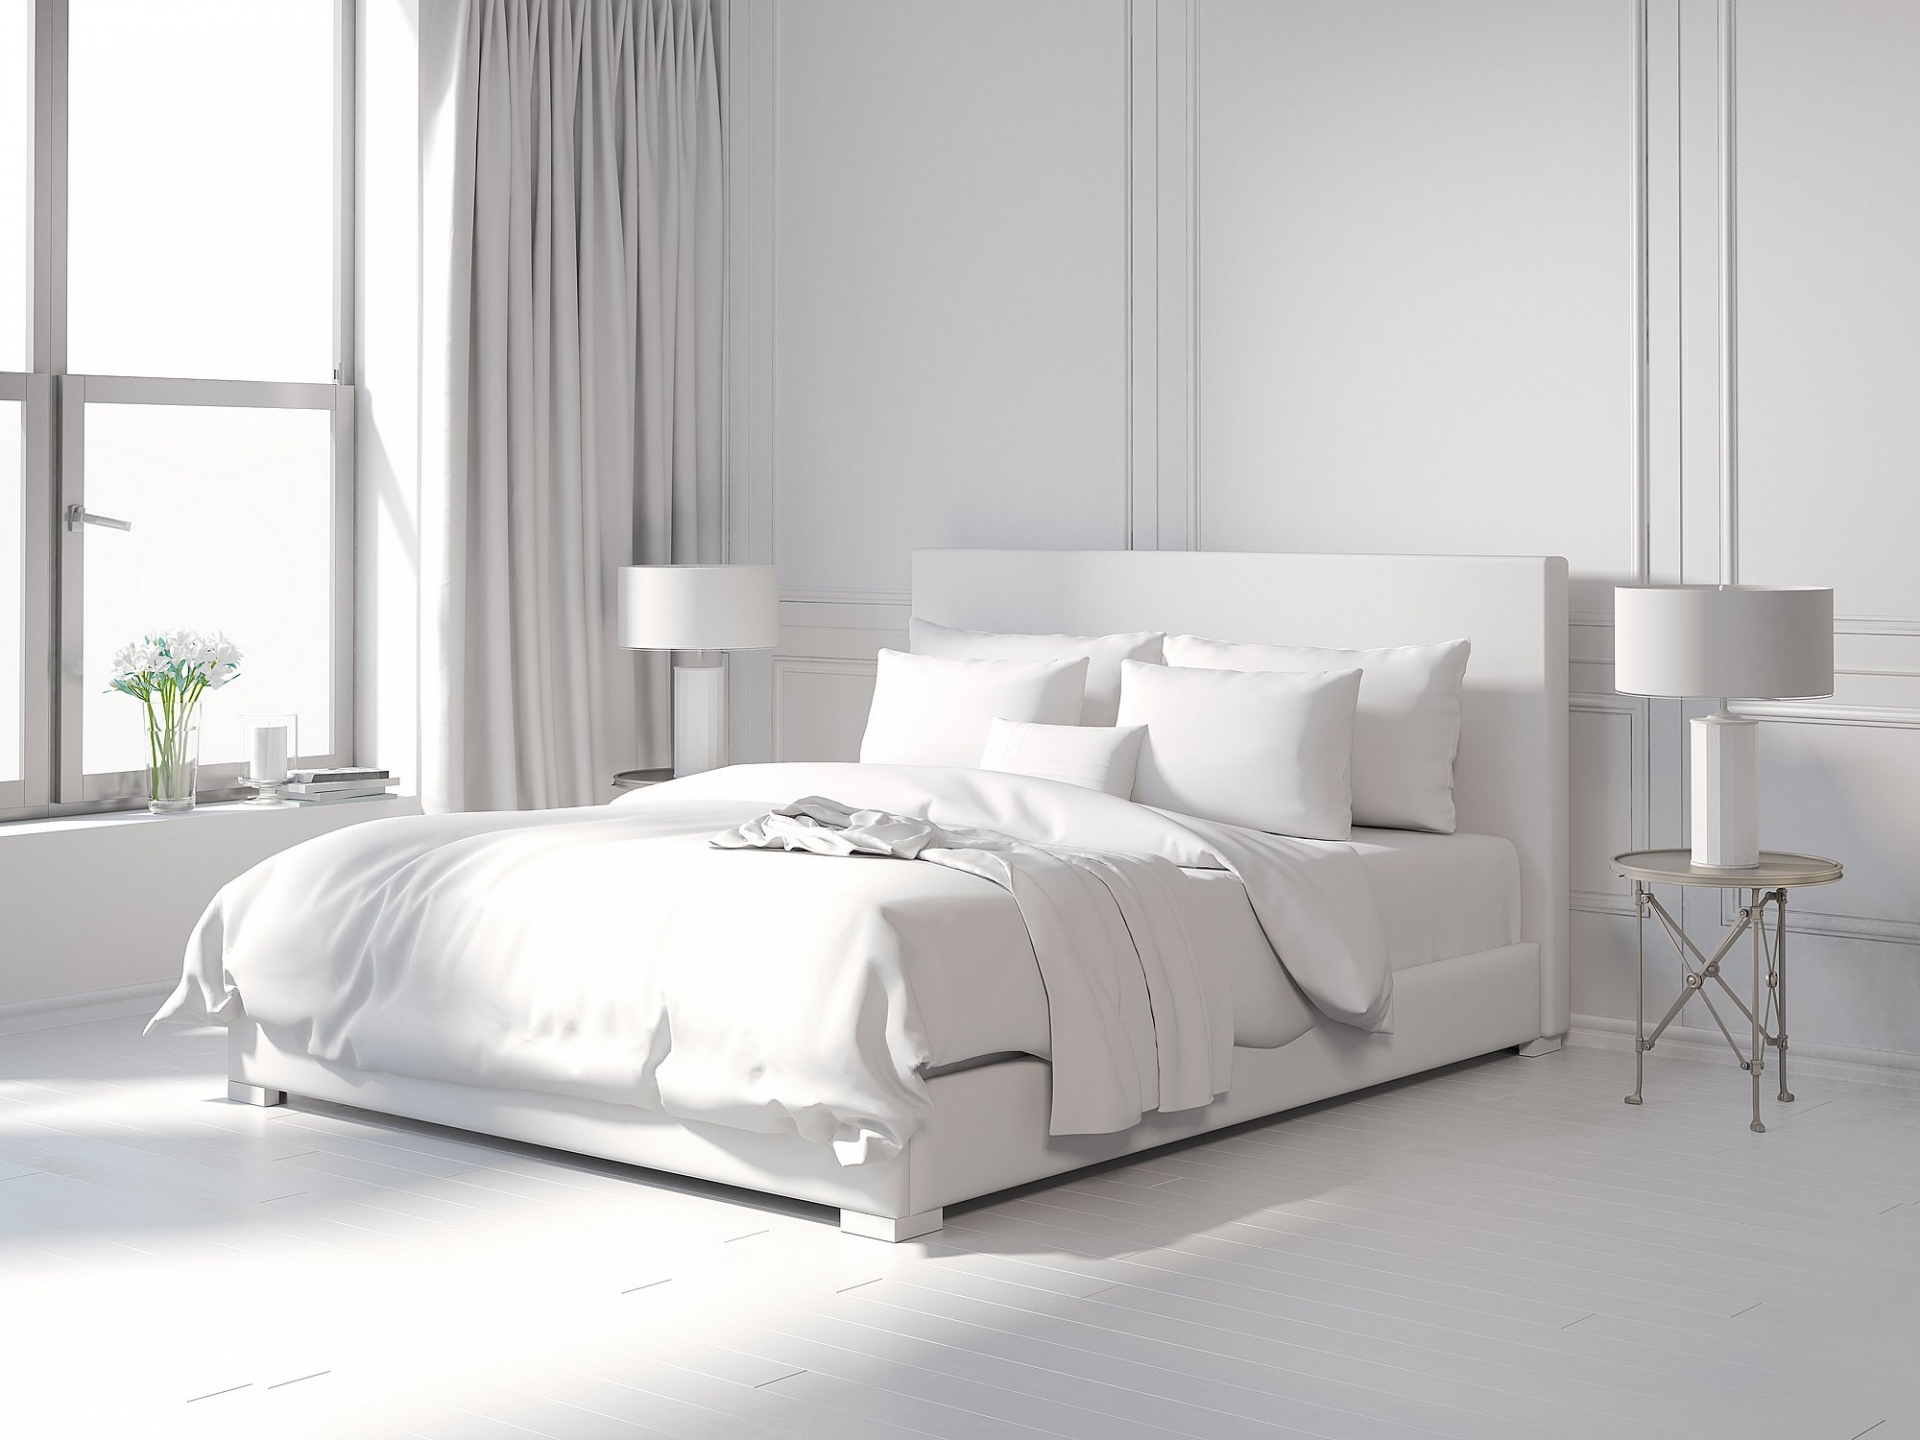 Sử dụng duy nhất màu trắng để sơn tường phòng ngủ sẽ vô tình khiến bạn liên tưởng đến căn phòng sạch sẽ, vô trùng ở… bệnh viện. 